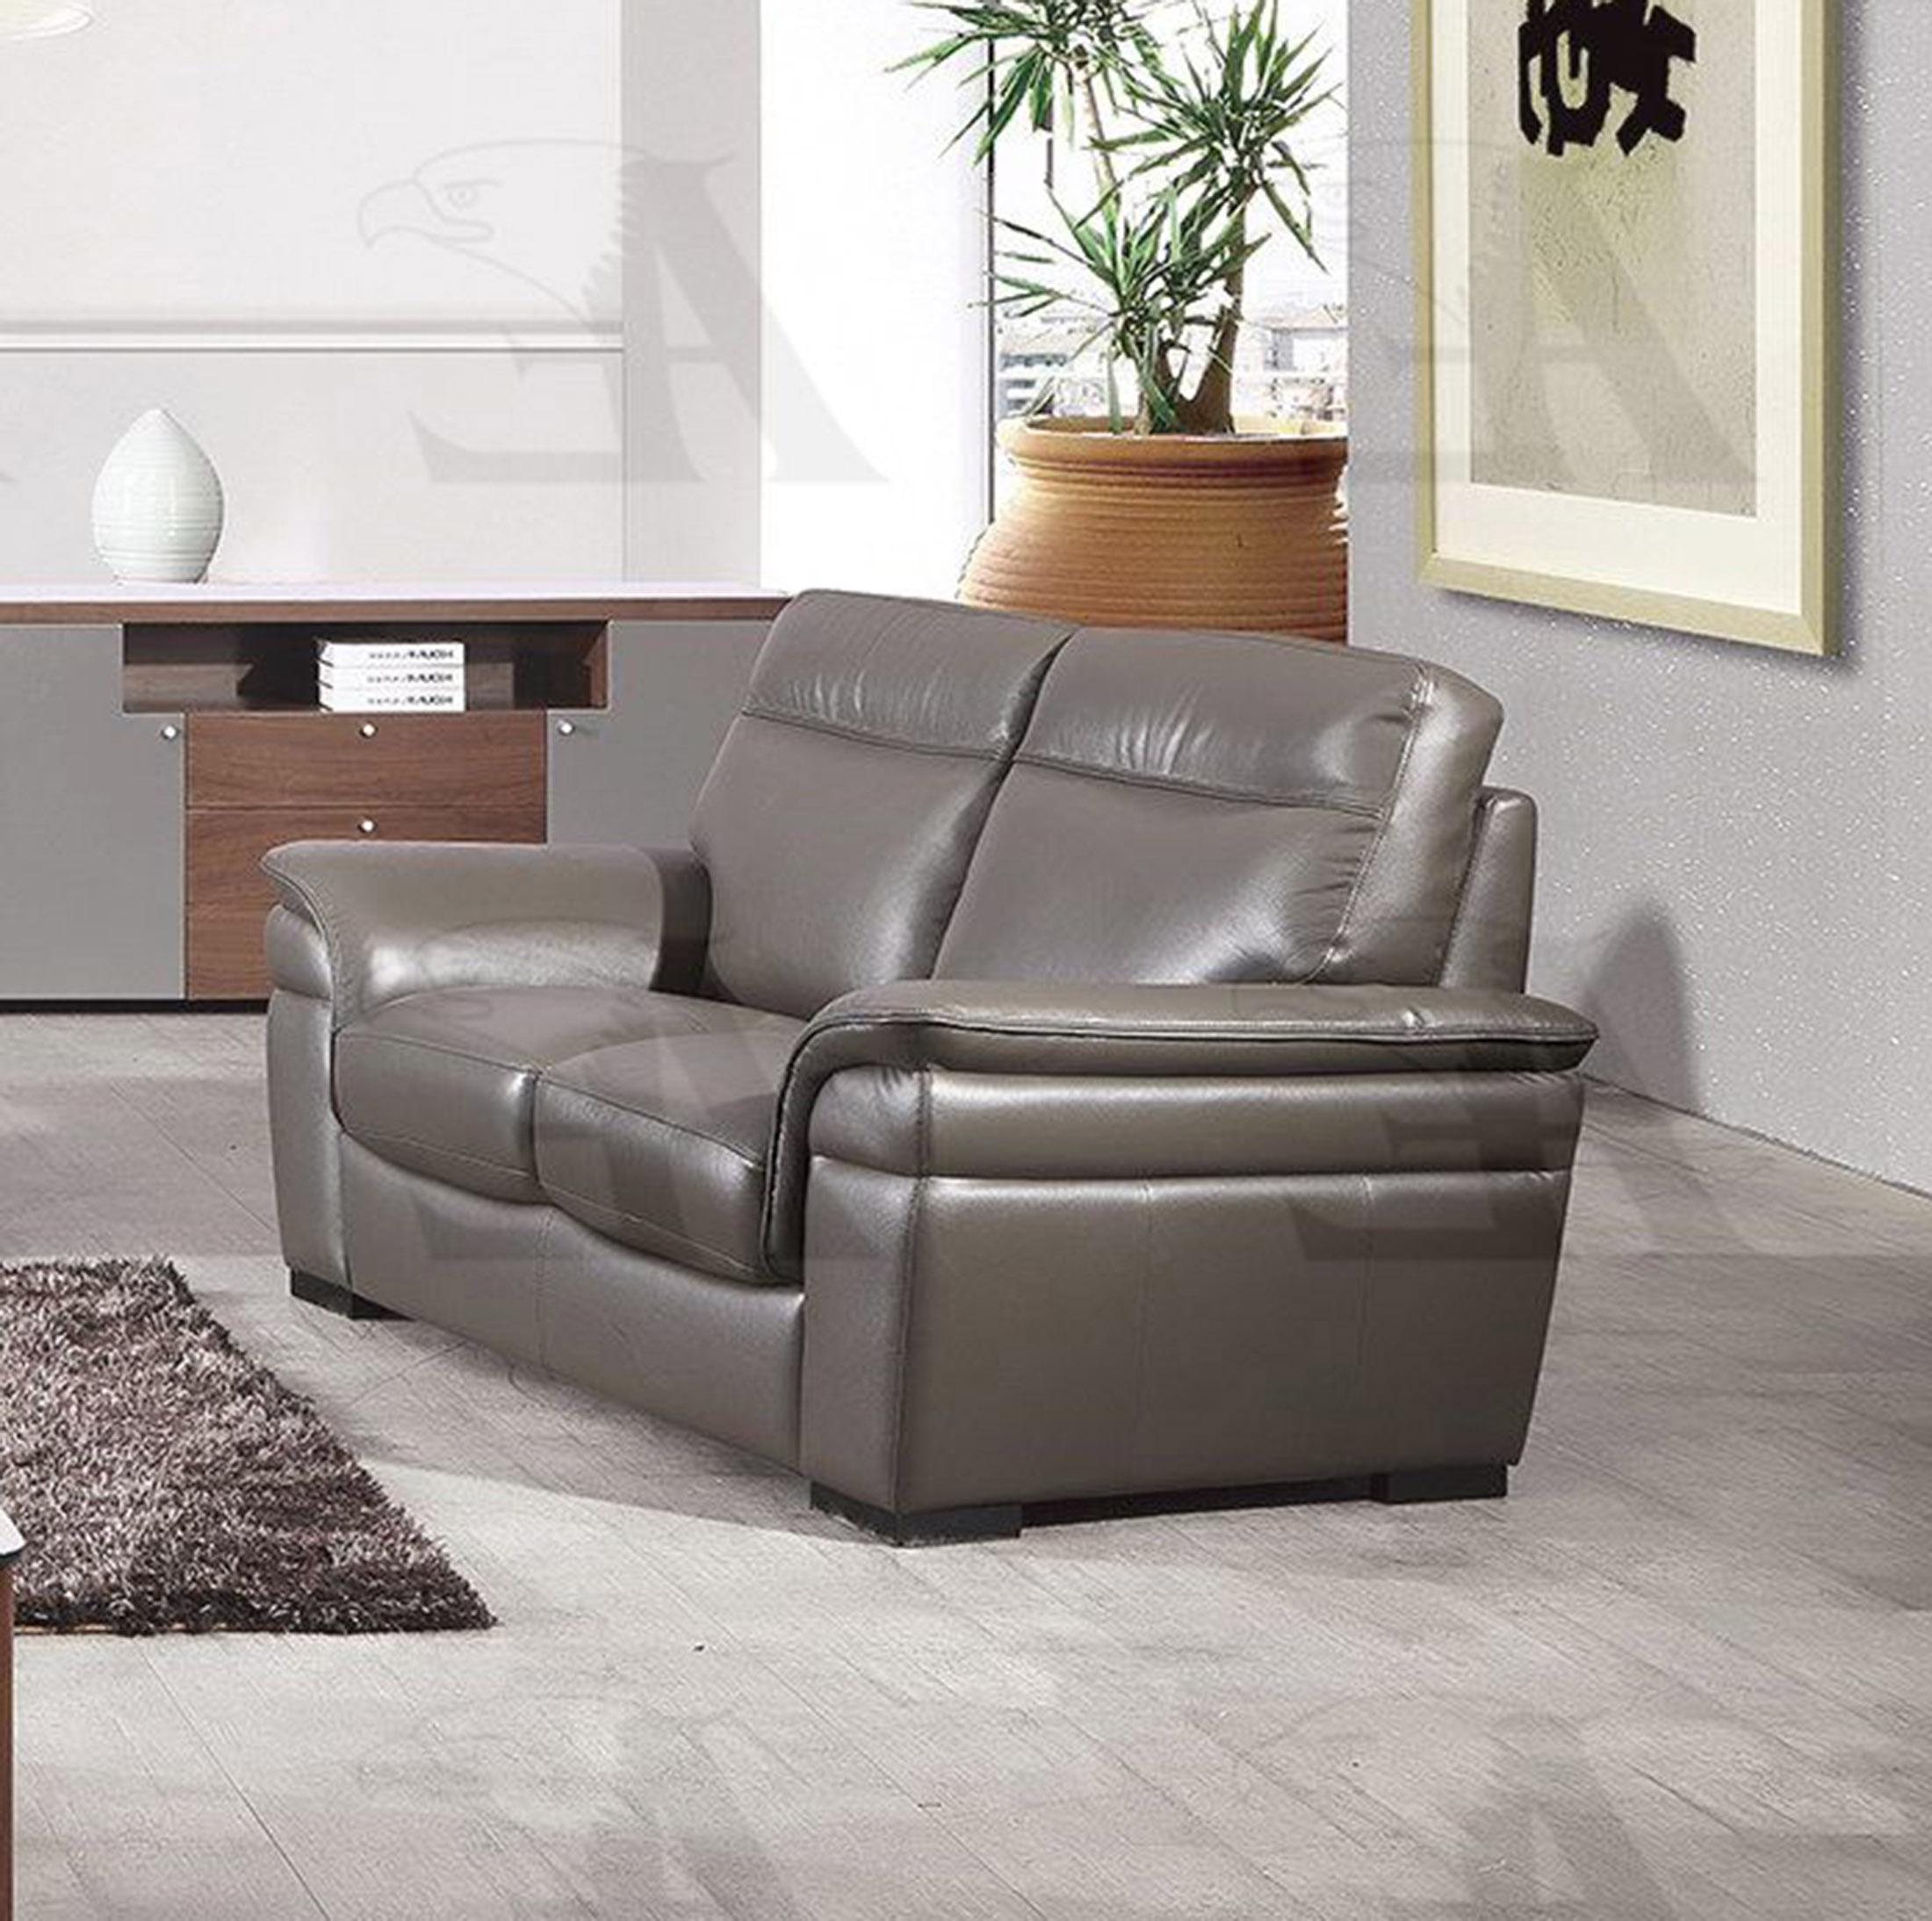 

    
American Eagle Furniture EK020-TPE Sofa Taupe EK020-TPE
